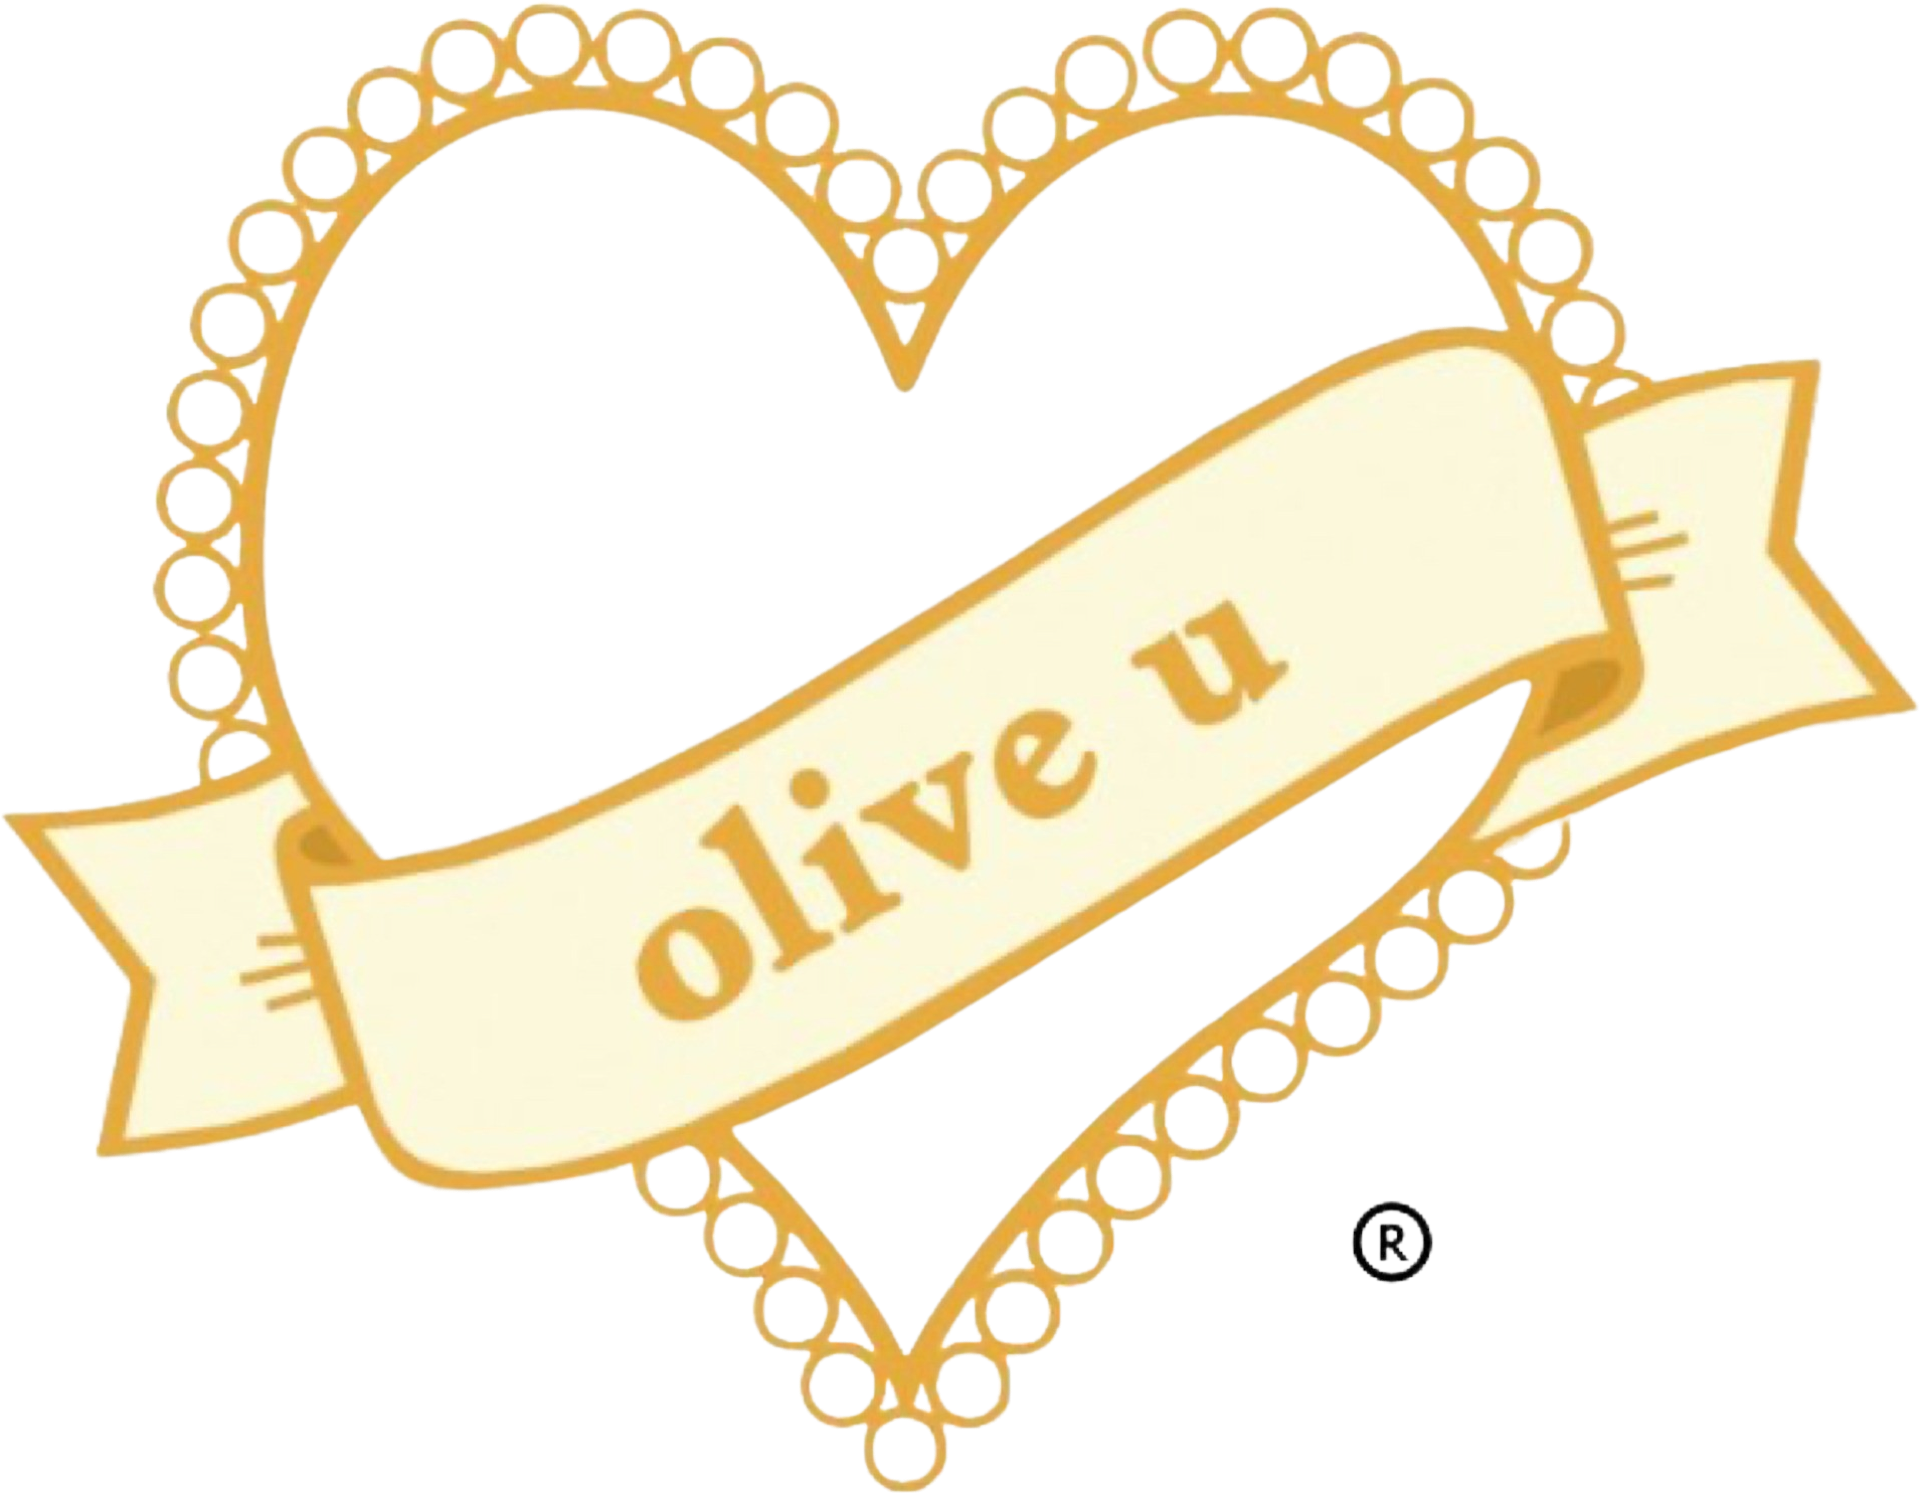 Liniment huile d'olive bio 0% LOVE&GREEN, 500ml - Super U, Hyper U